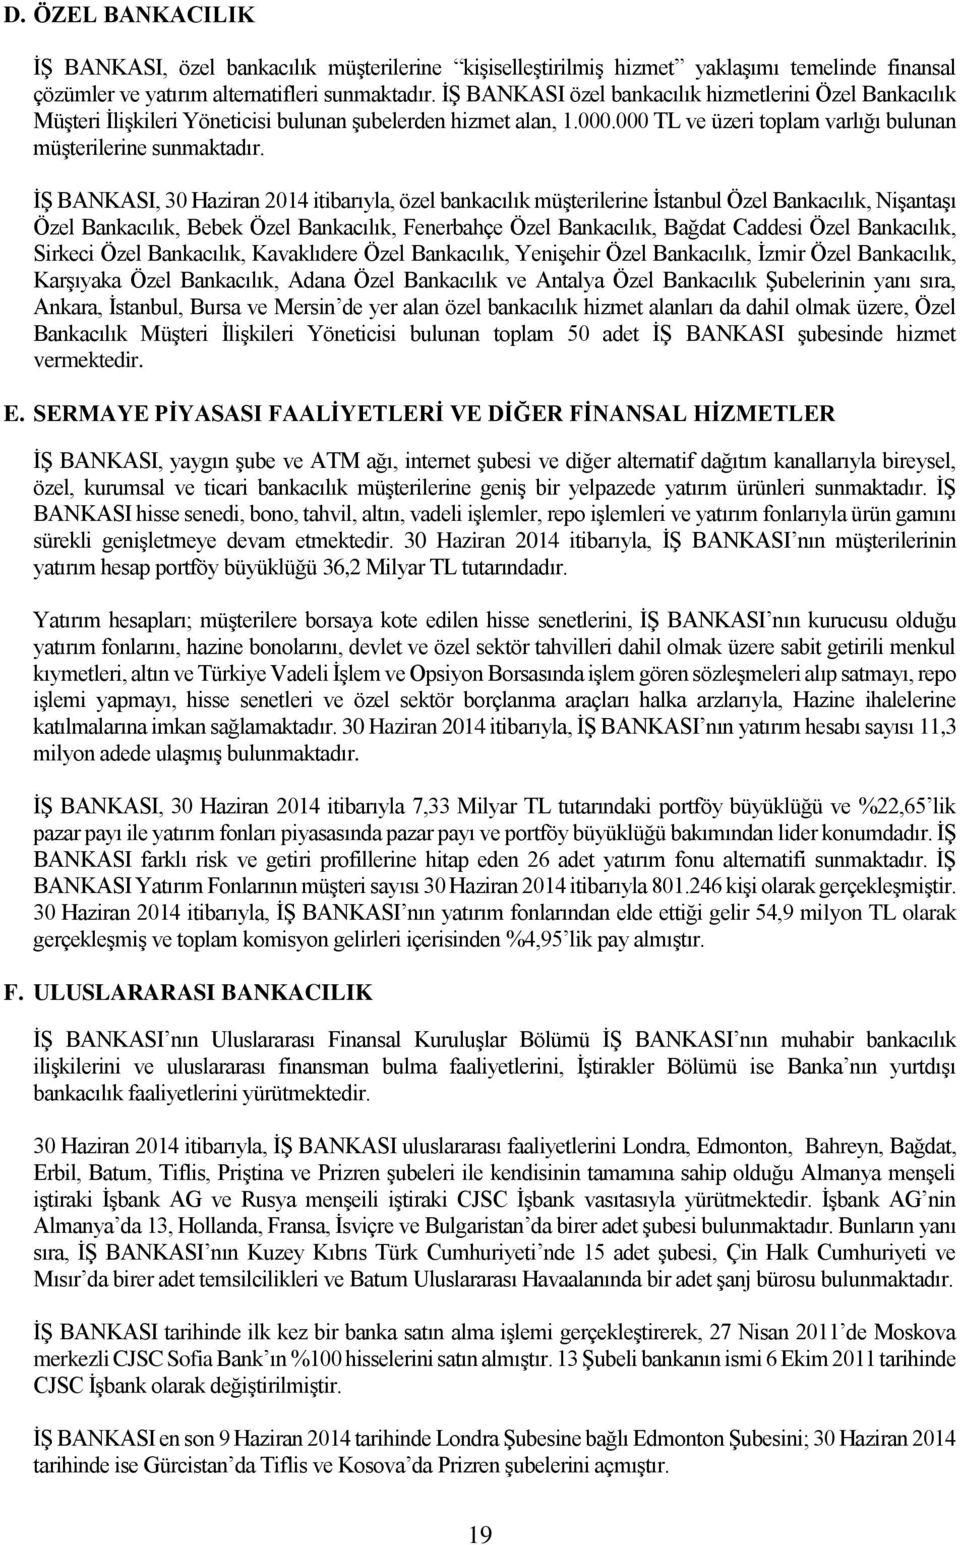 İŞ BANKASI, 30 Haziran 2014 itibarıyla, özel bankacılık müşterilerine İstanbul Özel Bankacılık, Nişantaşı Özel Bankacılık, Bebek Özel Bankacılık, Fenerbahçe Özel Bankacılık, Bağdat Caddesi Özel